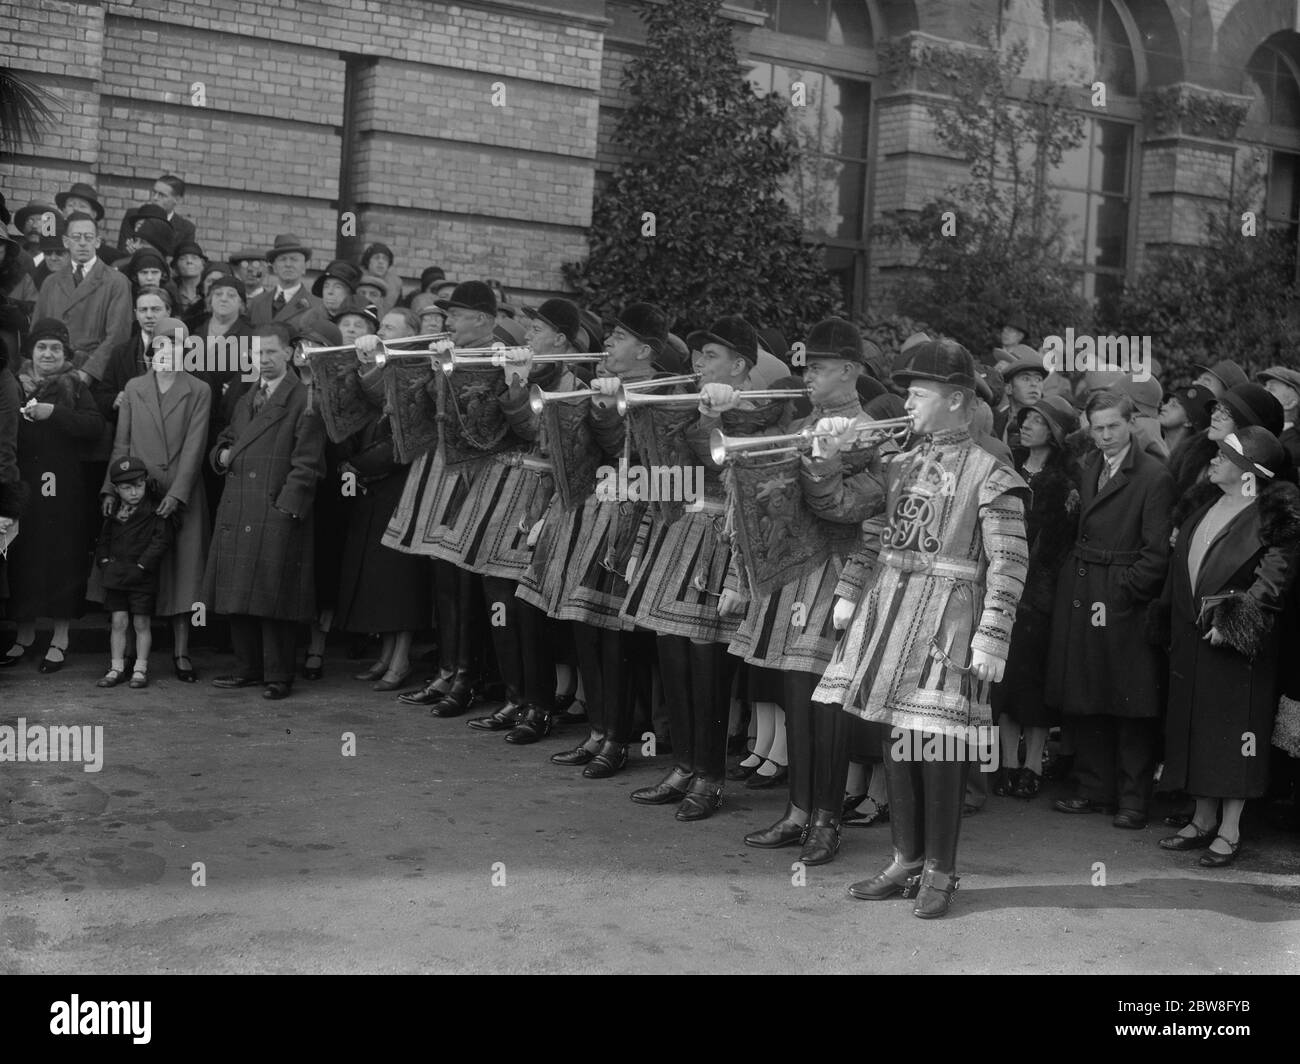 El alcalde visita el palacio Alexandra. Trompetistas sonando un fanfarria a la llegada del Alcalde en la ceremonia de apertura de la Gran exposición del Norte de Londres. 14 de octubre de 1931 Foto de stock